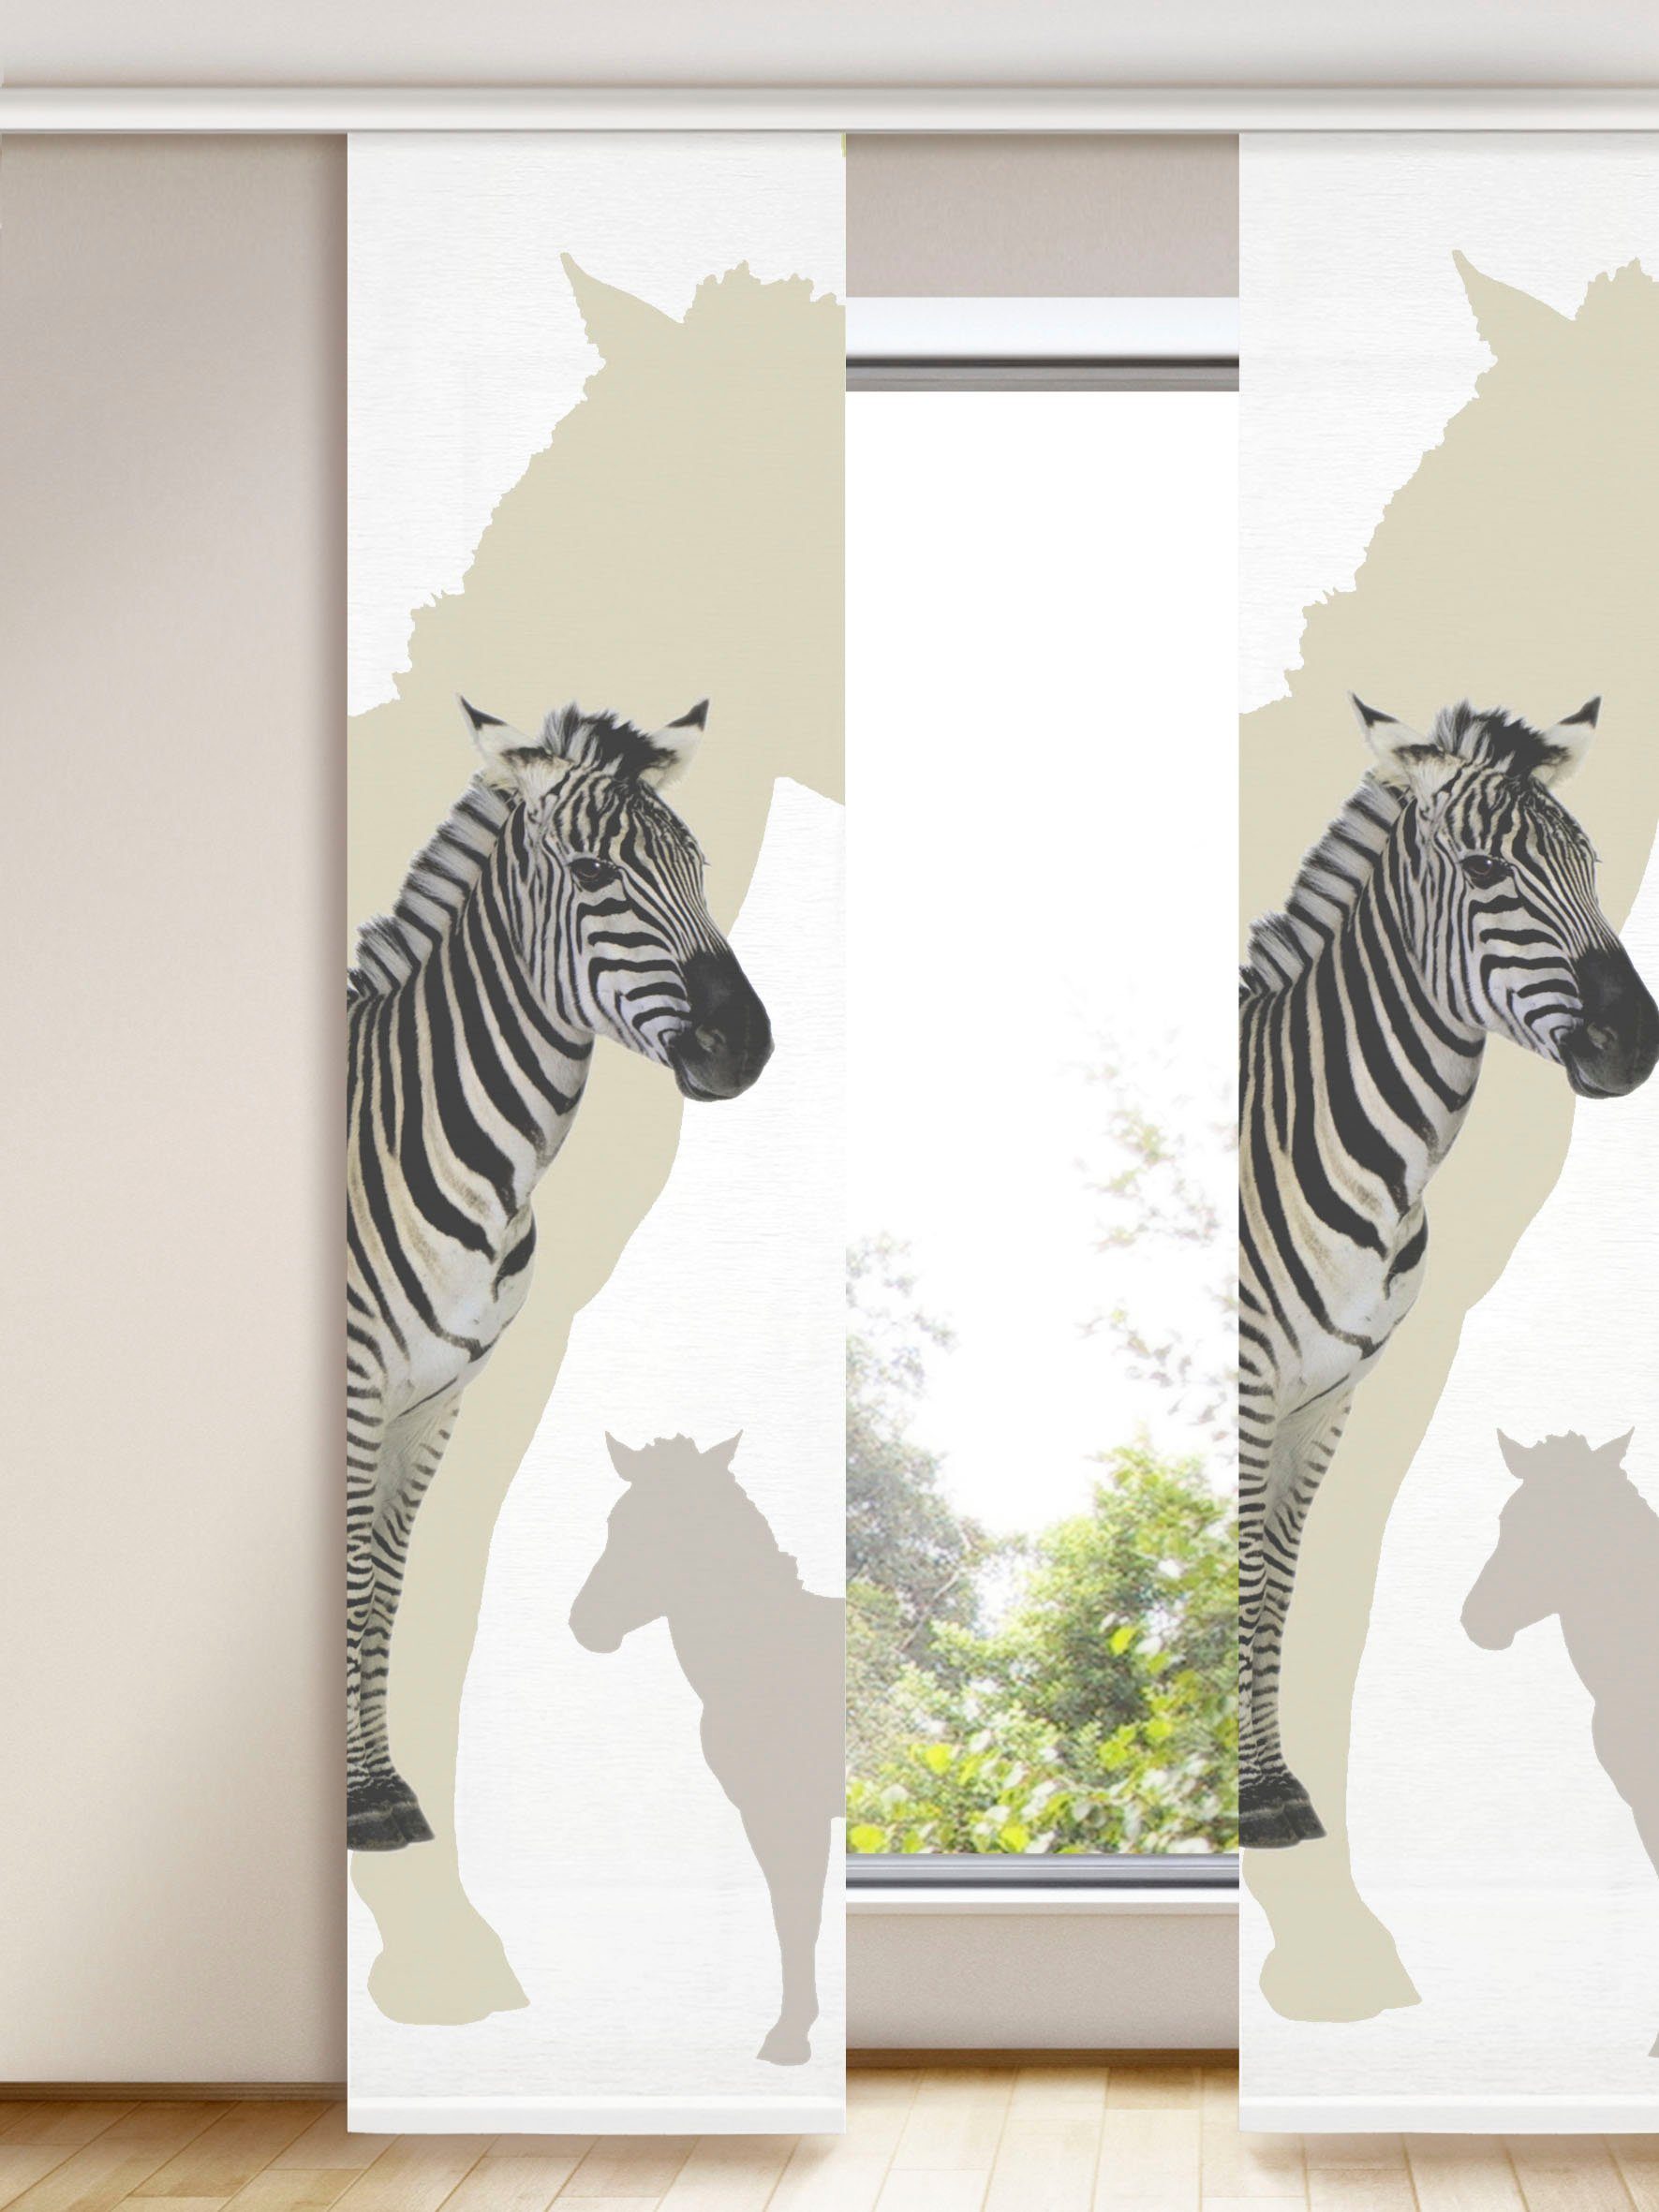 WILLKOMMEN ZUHAUSE by ALBANI GROUP Gordijn Zebra Foto-paneelgordijn zonder techniek (1 stuk)